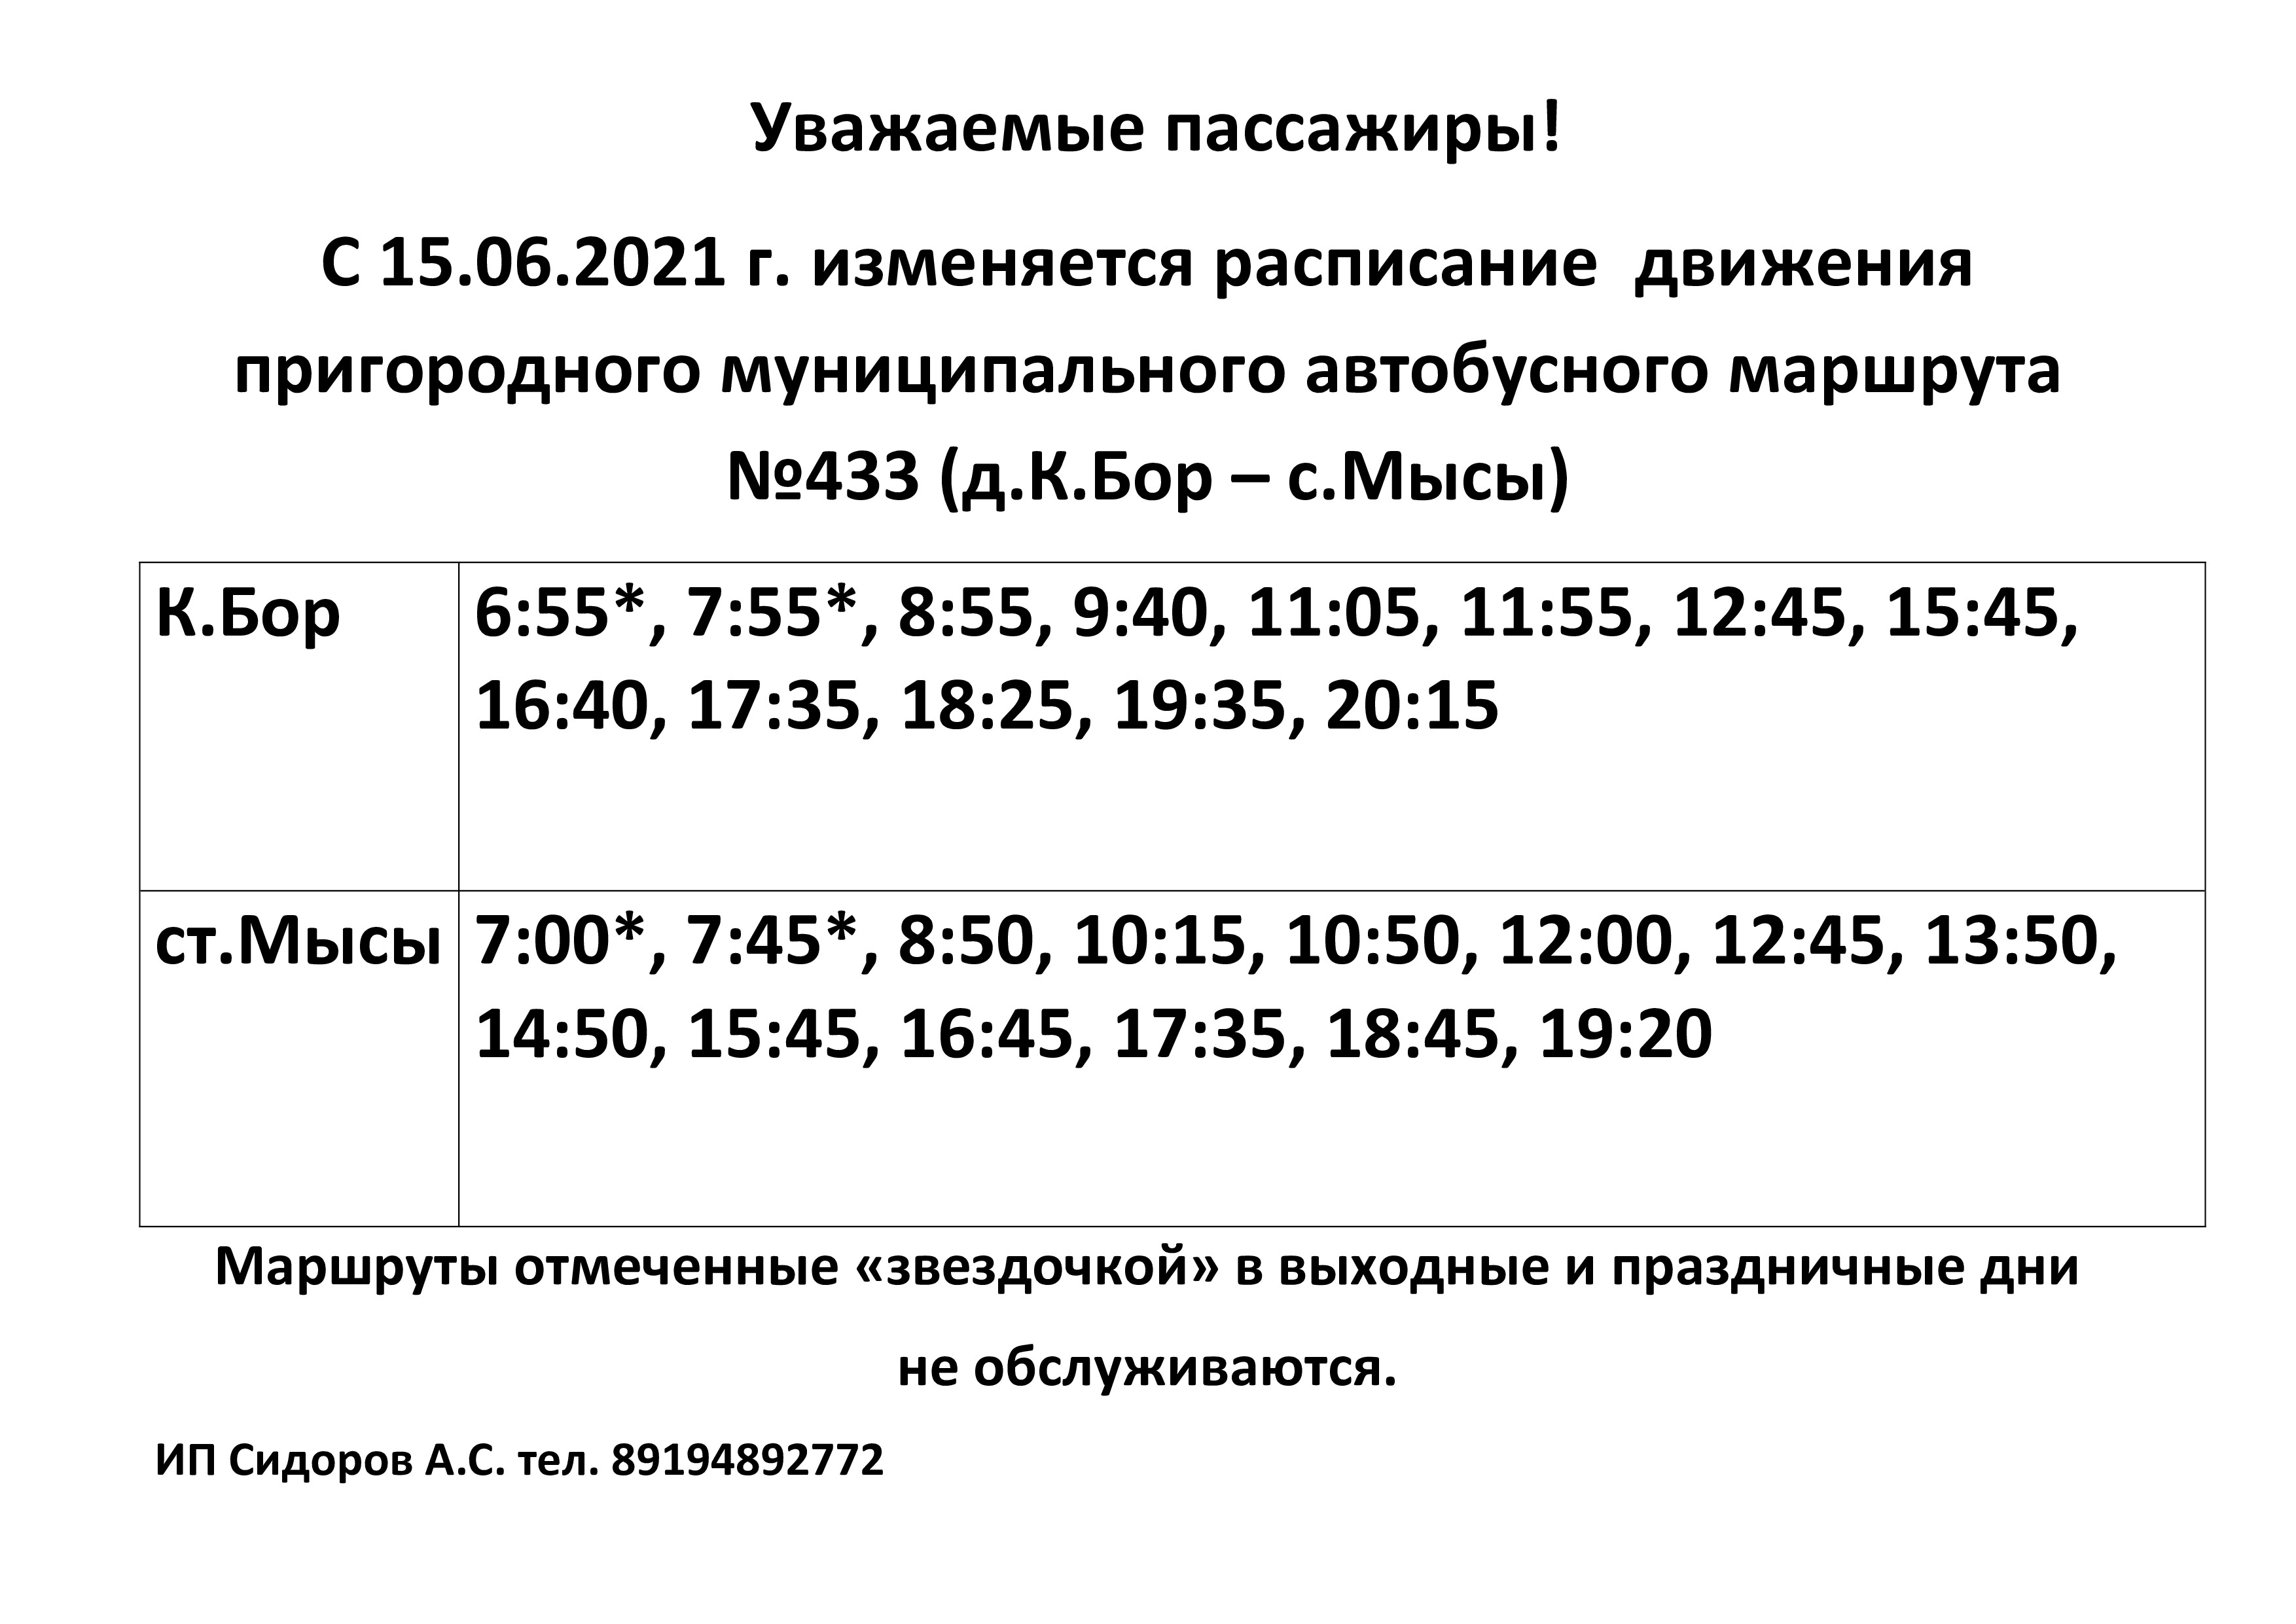 Автобус краснокамск курья 205. 433 Автобус расписание Краснокамск Мысы. Расписание 433 автобуса Краснокамск. 433 Автобус расписание. Расписание автобусов Краснокамск расписание автобуса 433.